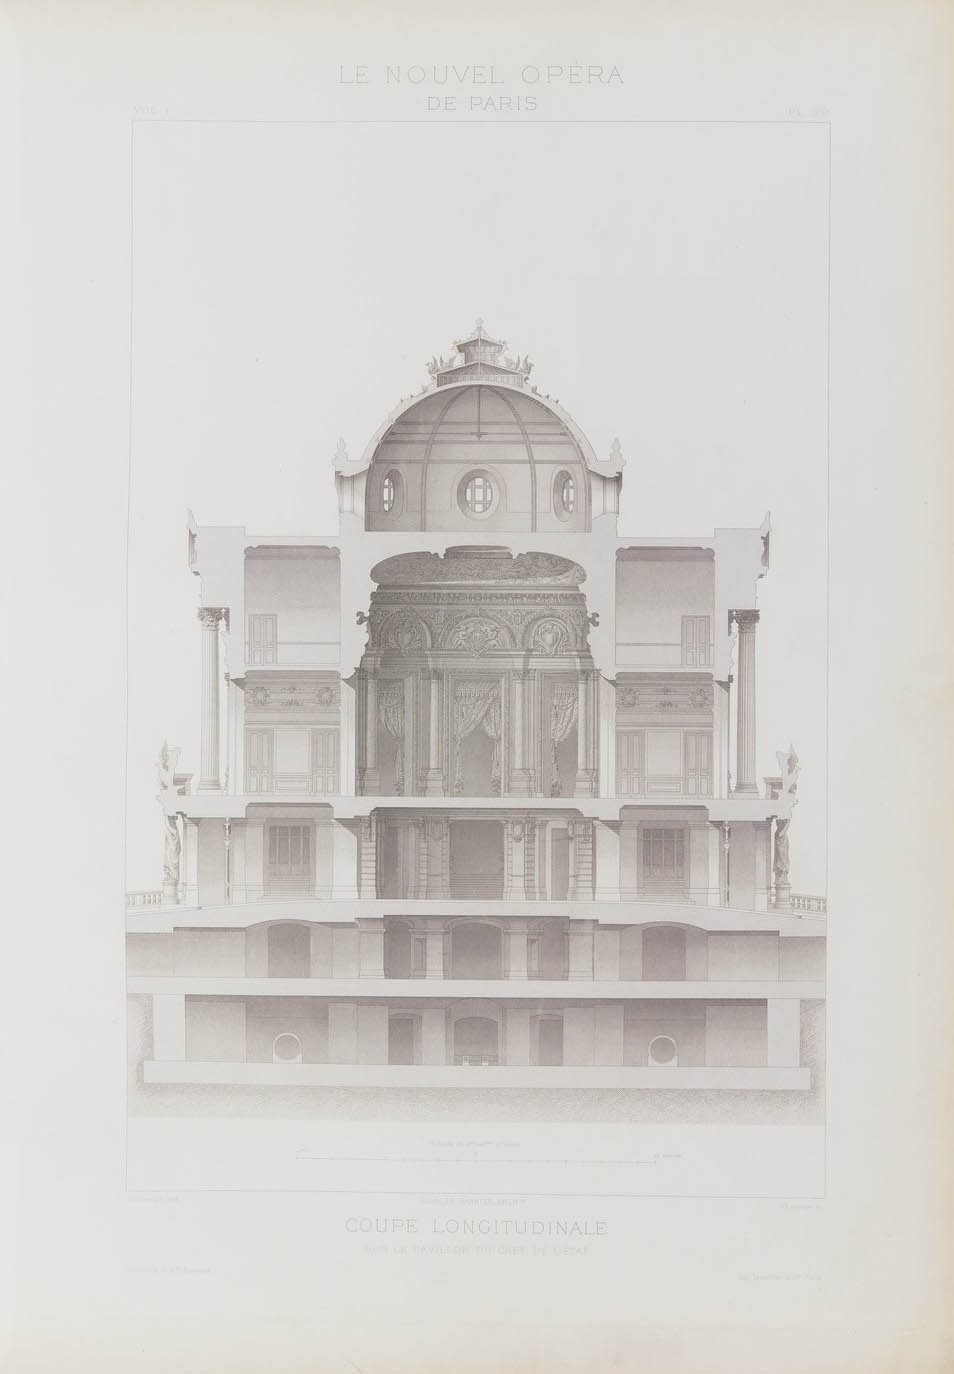 Coupe longitudinale, vol. I  © Cité de l'architecture & du patrimoine/Musée des Monuments français